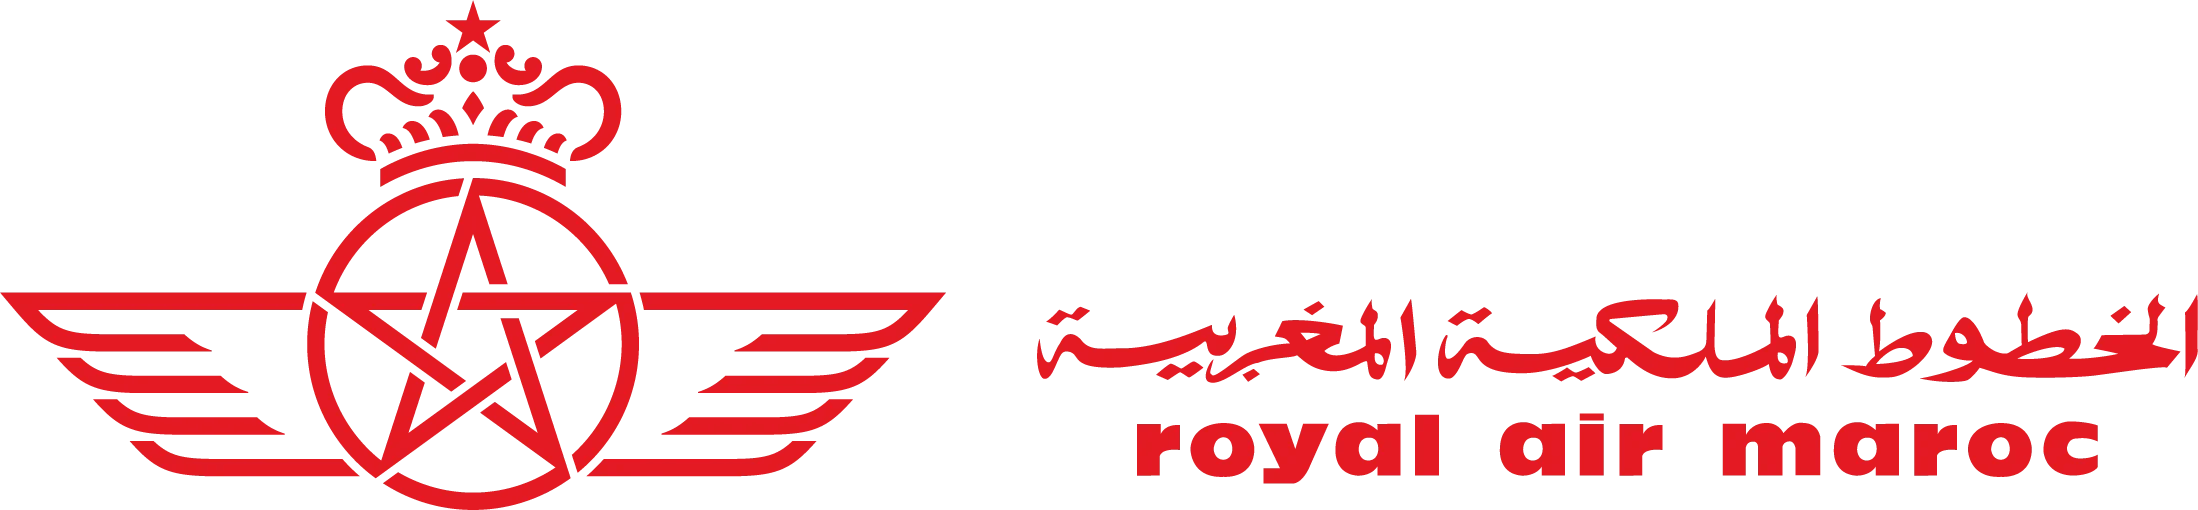 Royal Air Maroc: aerolínea asociada de oneworld